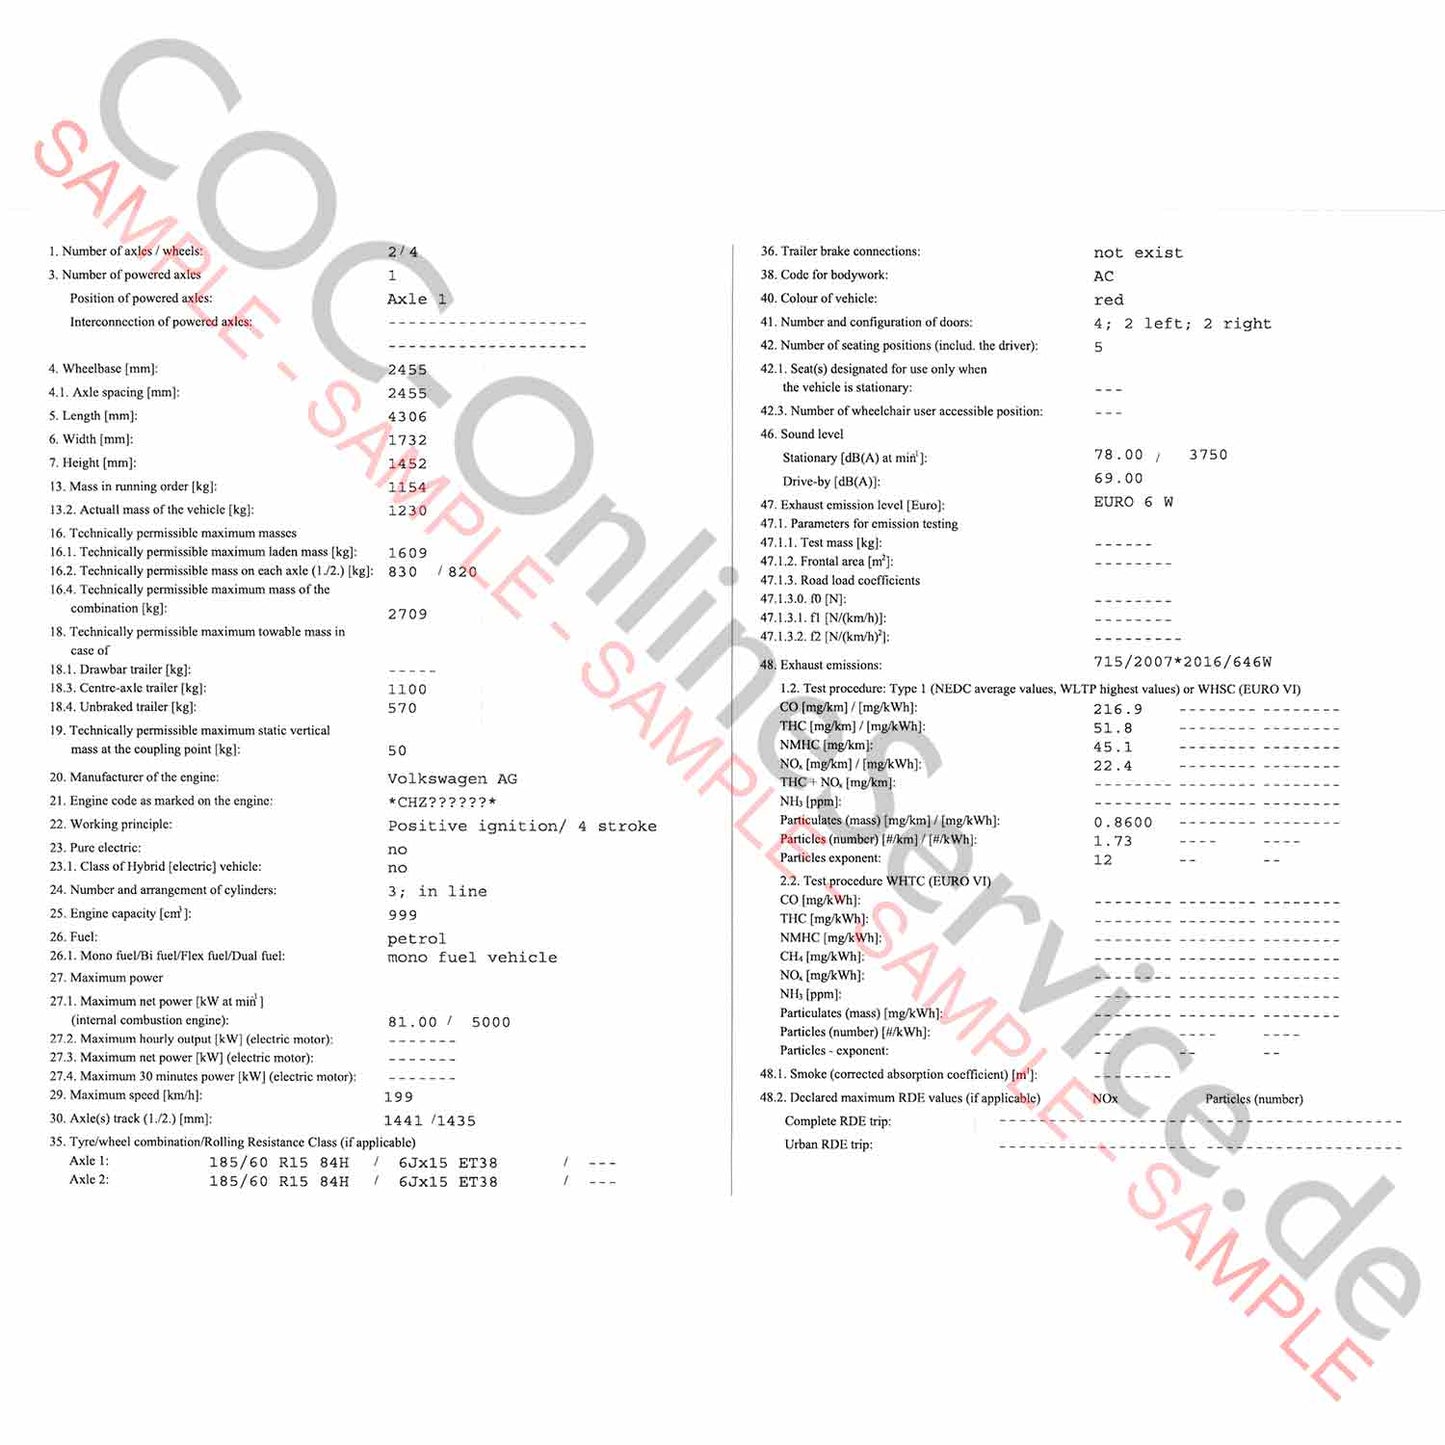 COC-papieren voor Skoda (certificaat van overeenstemming)